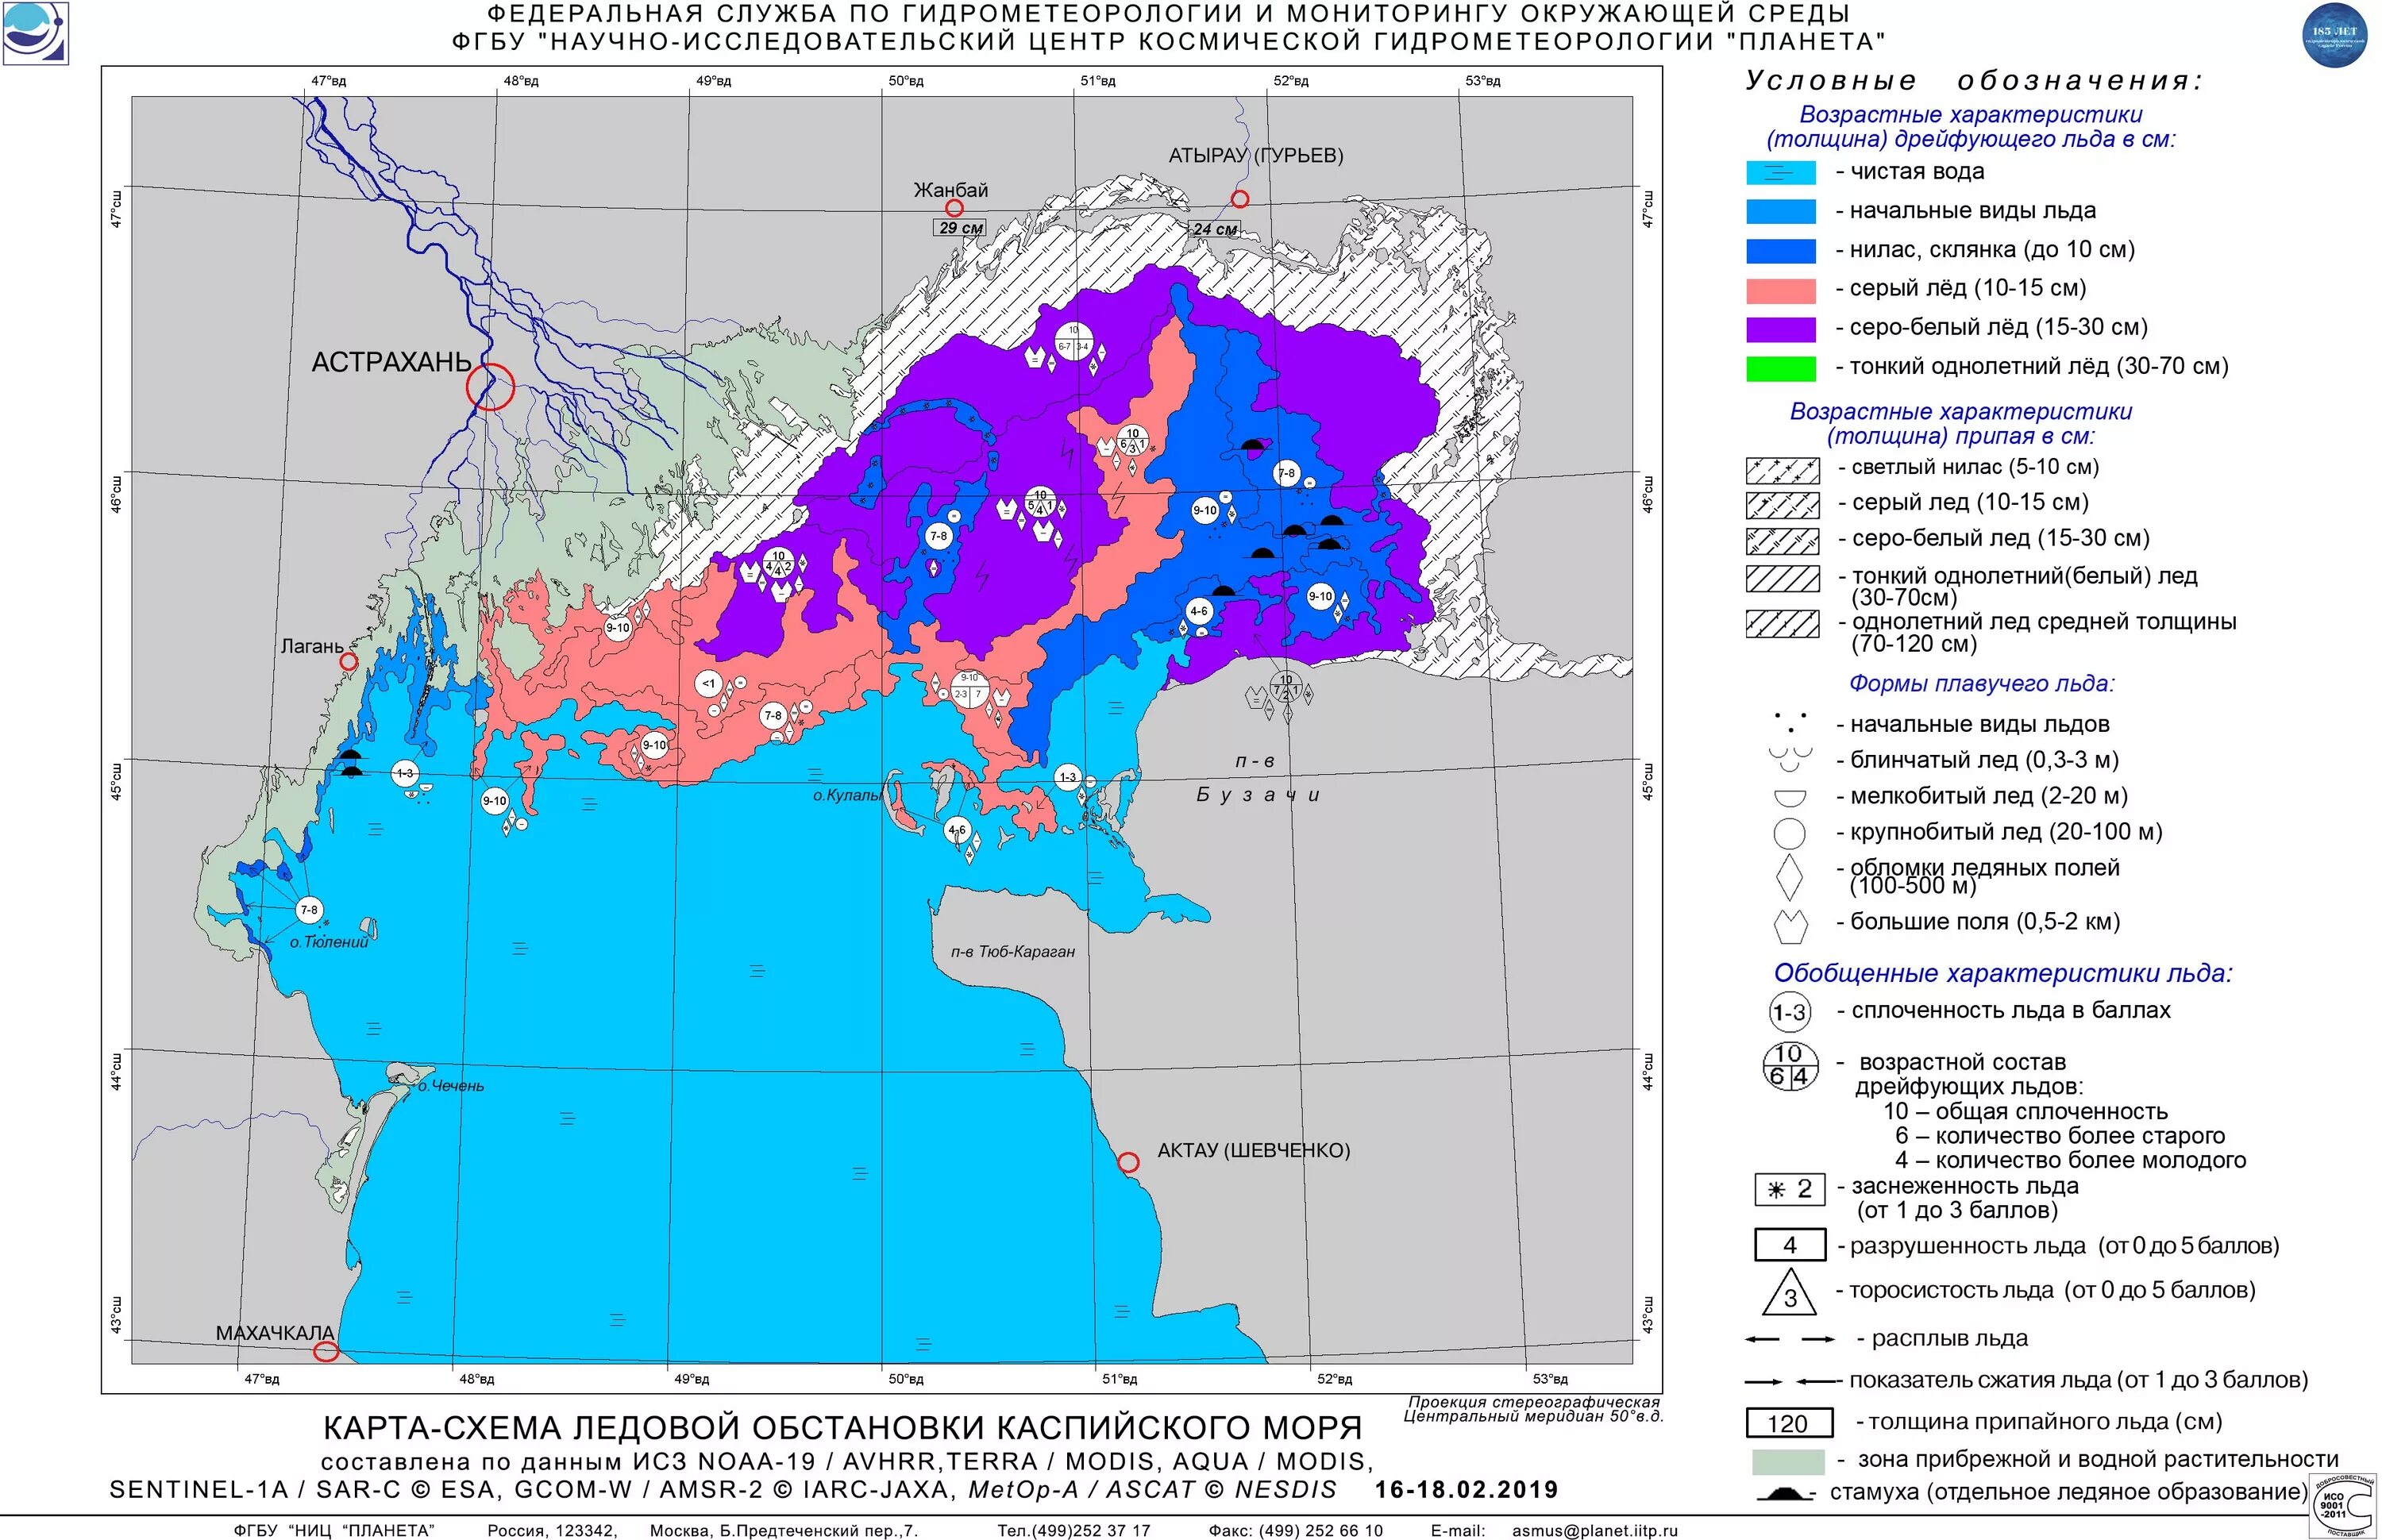 Изучение ледовой обстановки. Ледовая карта. Ледовая обстановка в Каспийском море. Мониторинг ледовой обстановки. Карта ледовой обстановки.